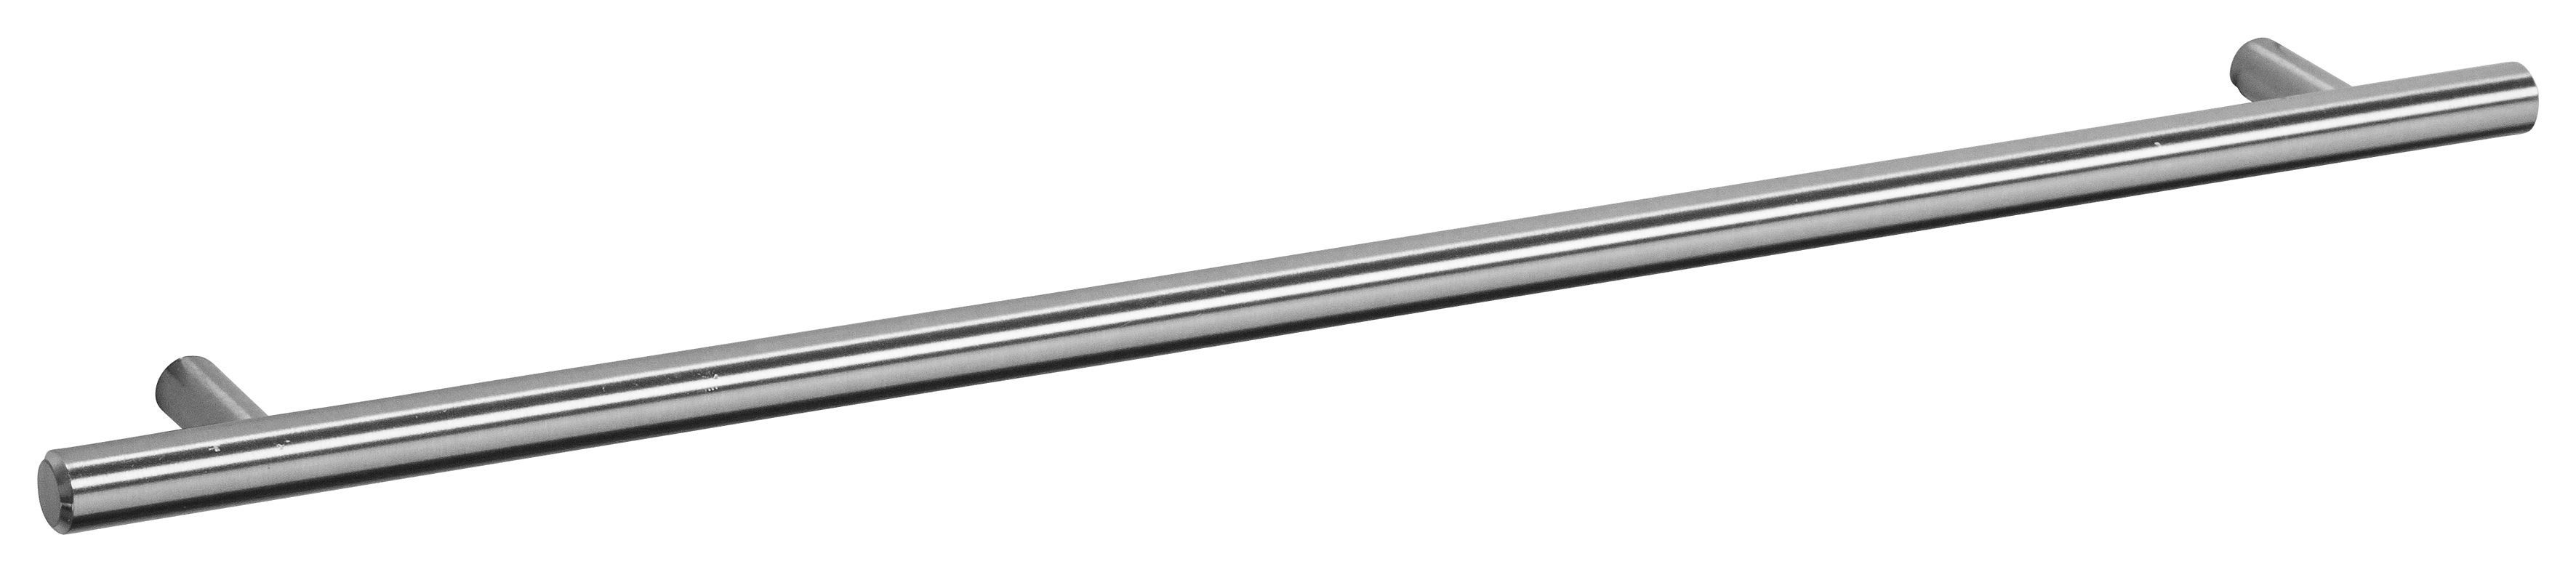 OPTIFIT Spülenschrank Bern 100 cm 2 breit, höhenverstellbare Metallgriffen Türen, mit | Hochglanz/weiß Füße, weiß mit weiß